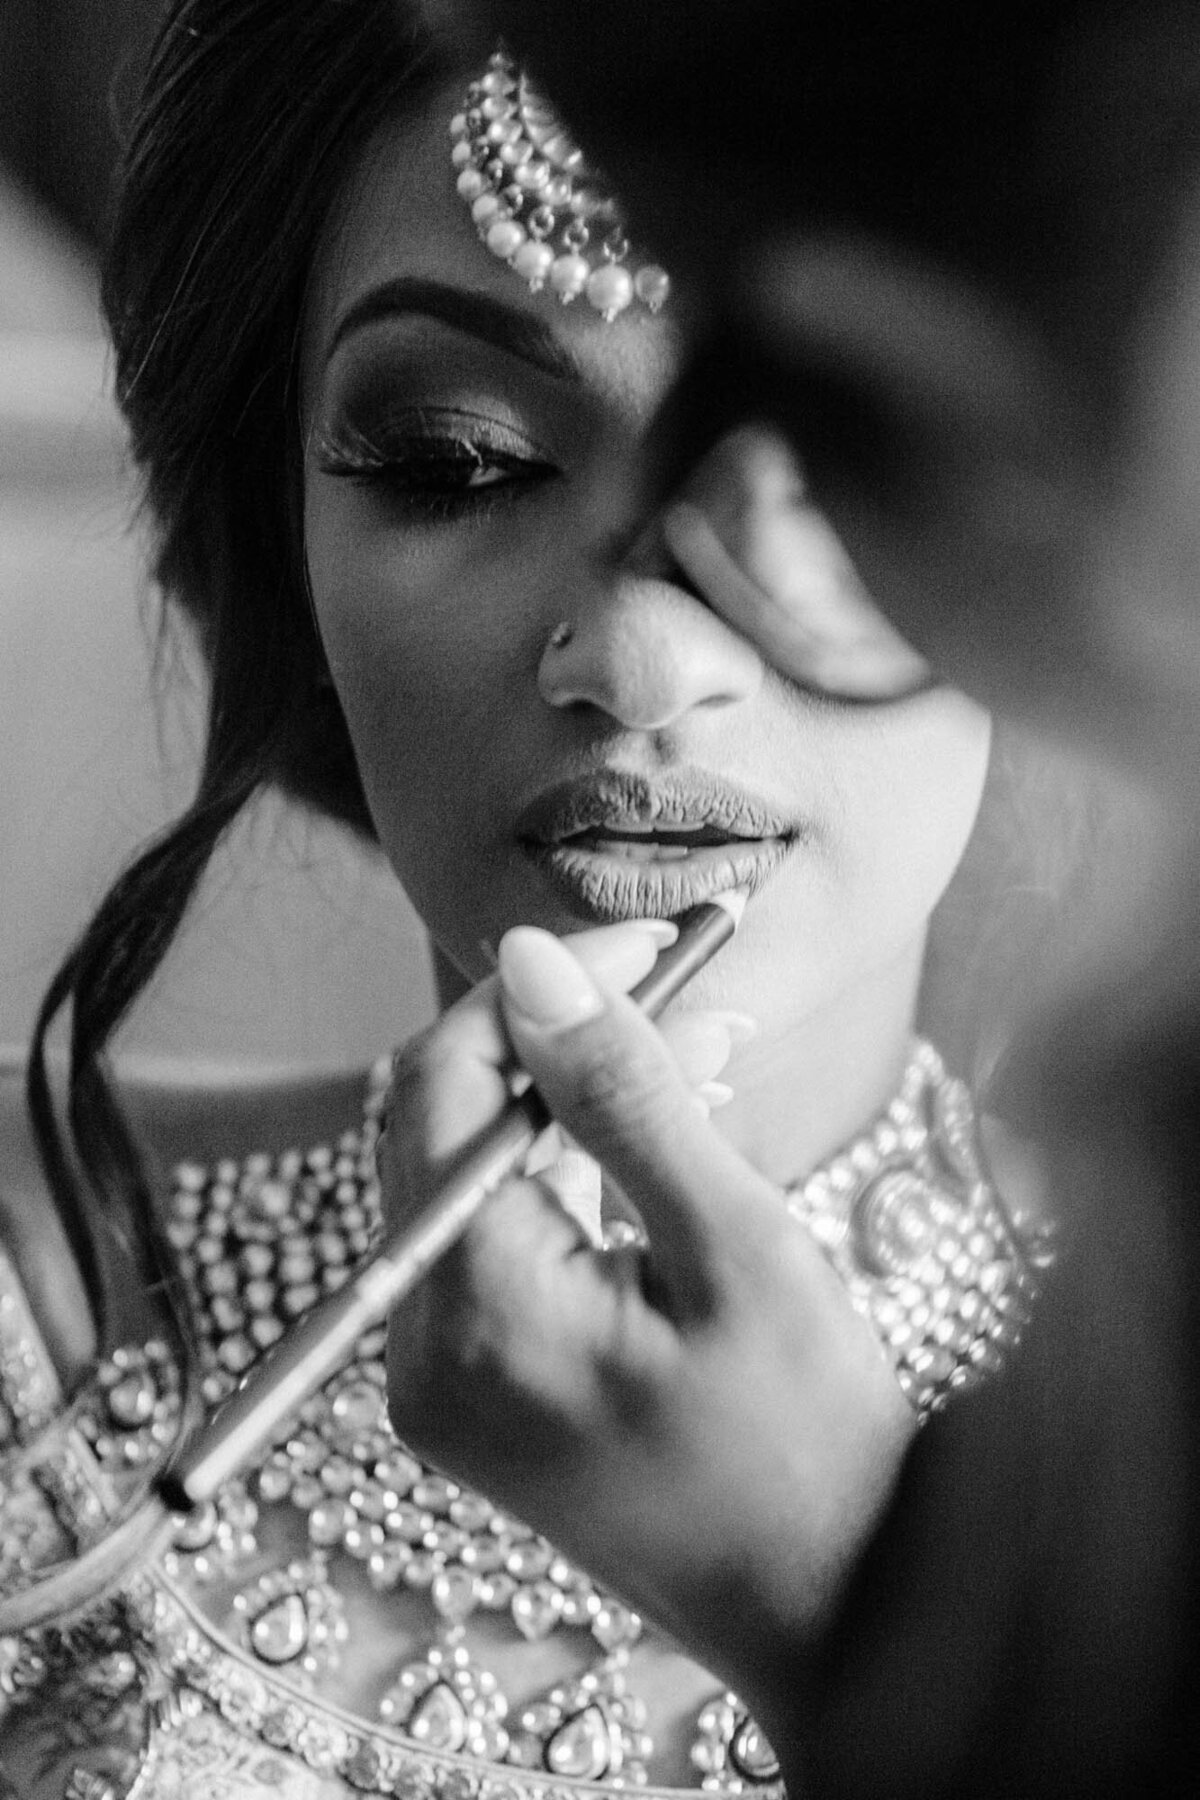 Bengali wedding photographer in Calgary captures bridal makeup application